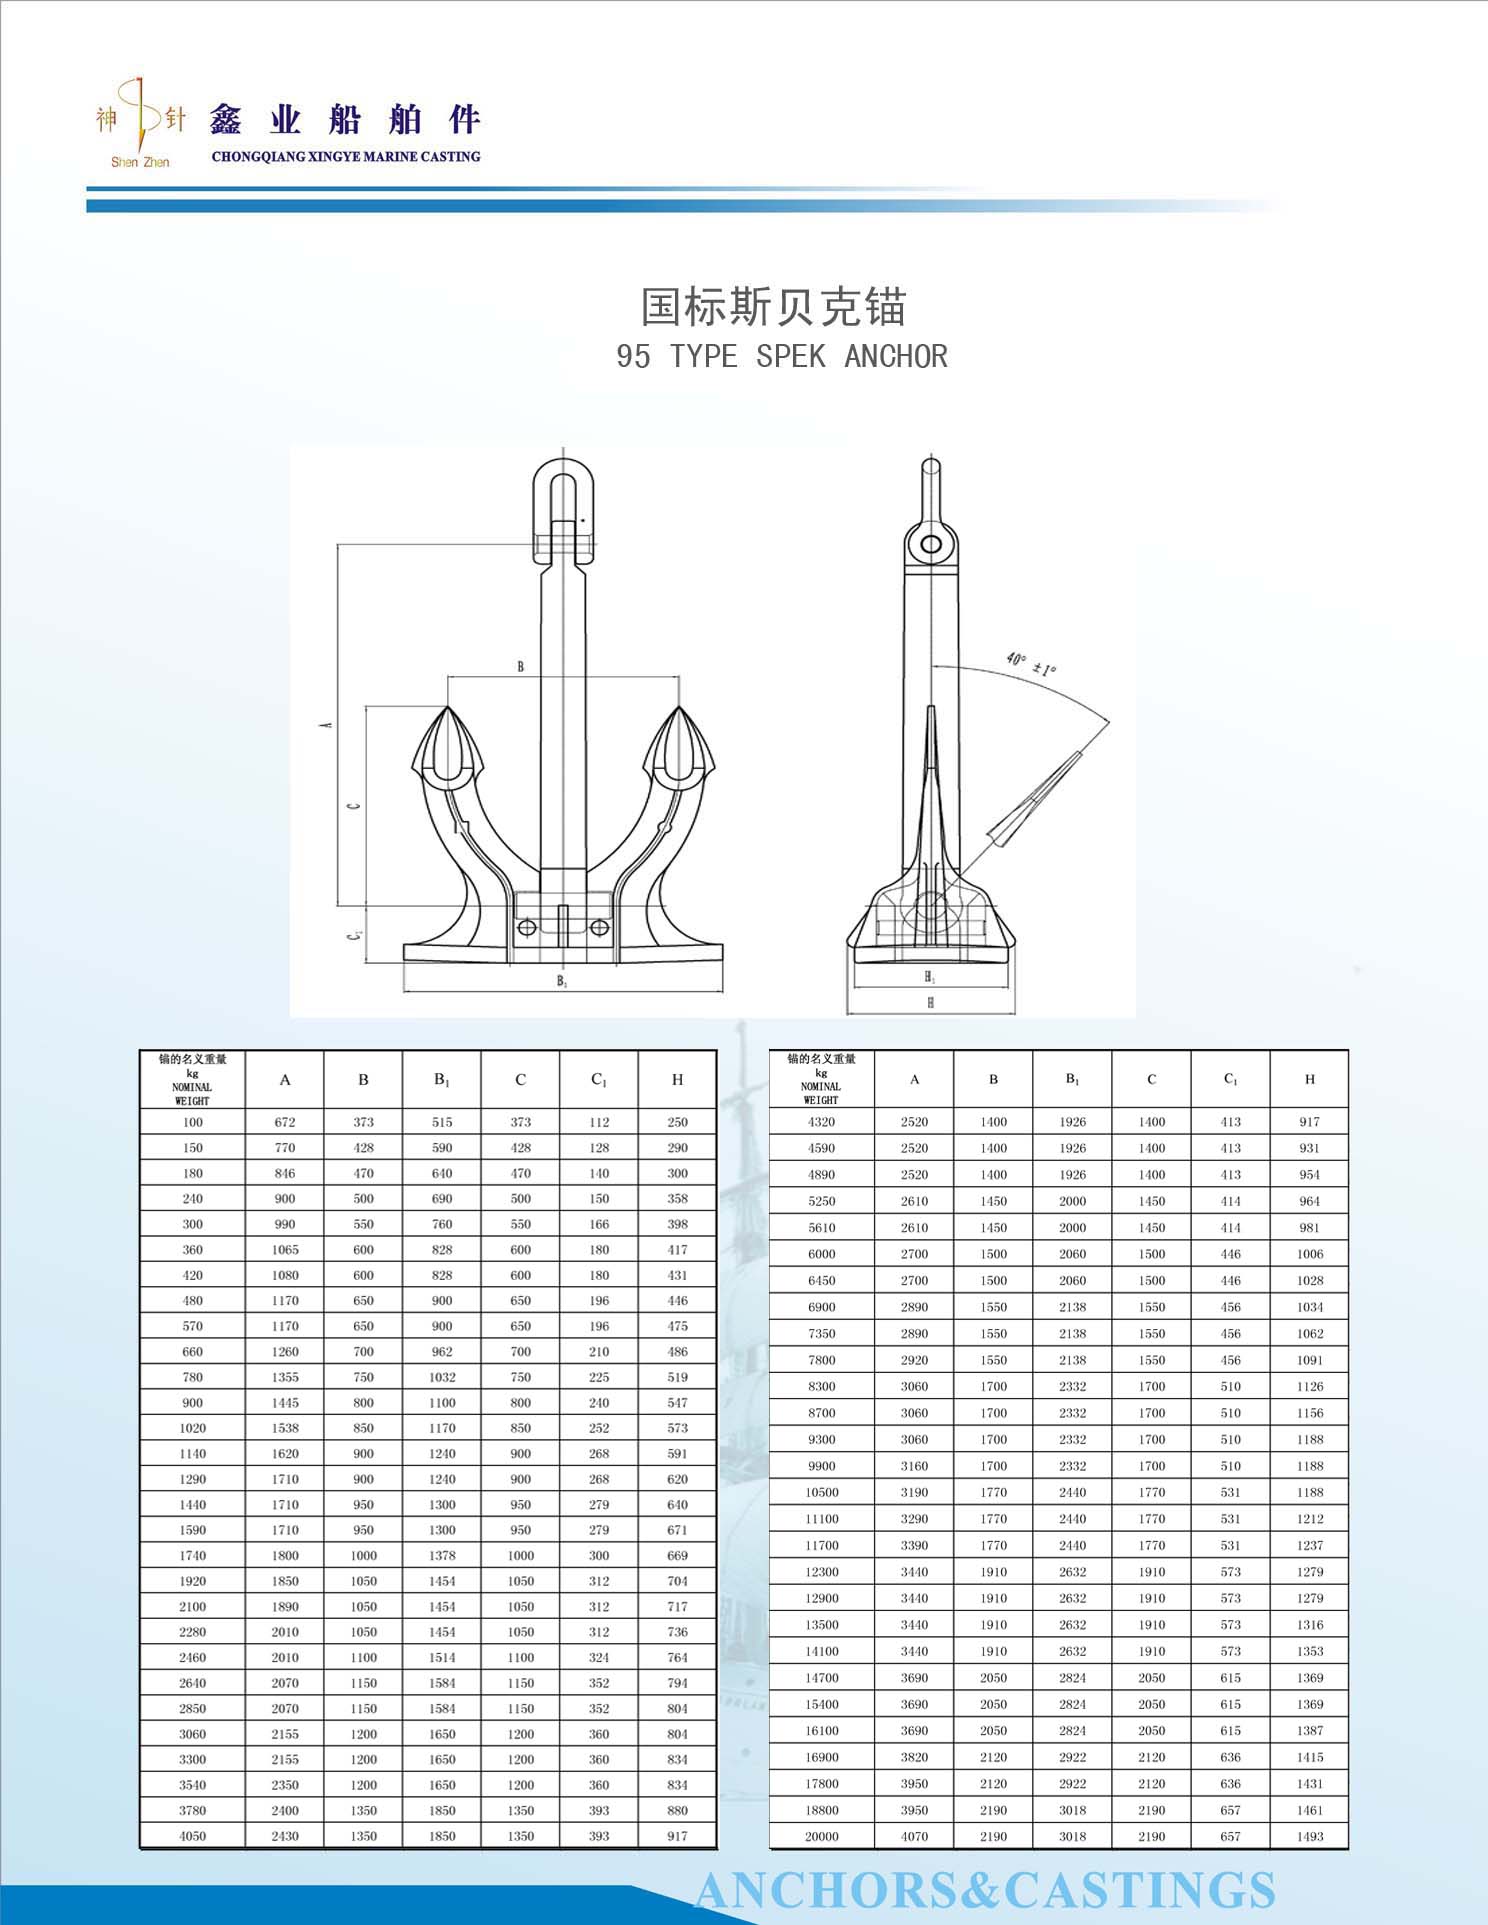 Chongqing Xinye Marine Casting Co. Ltd. | Anchor Types